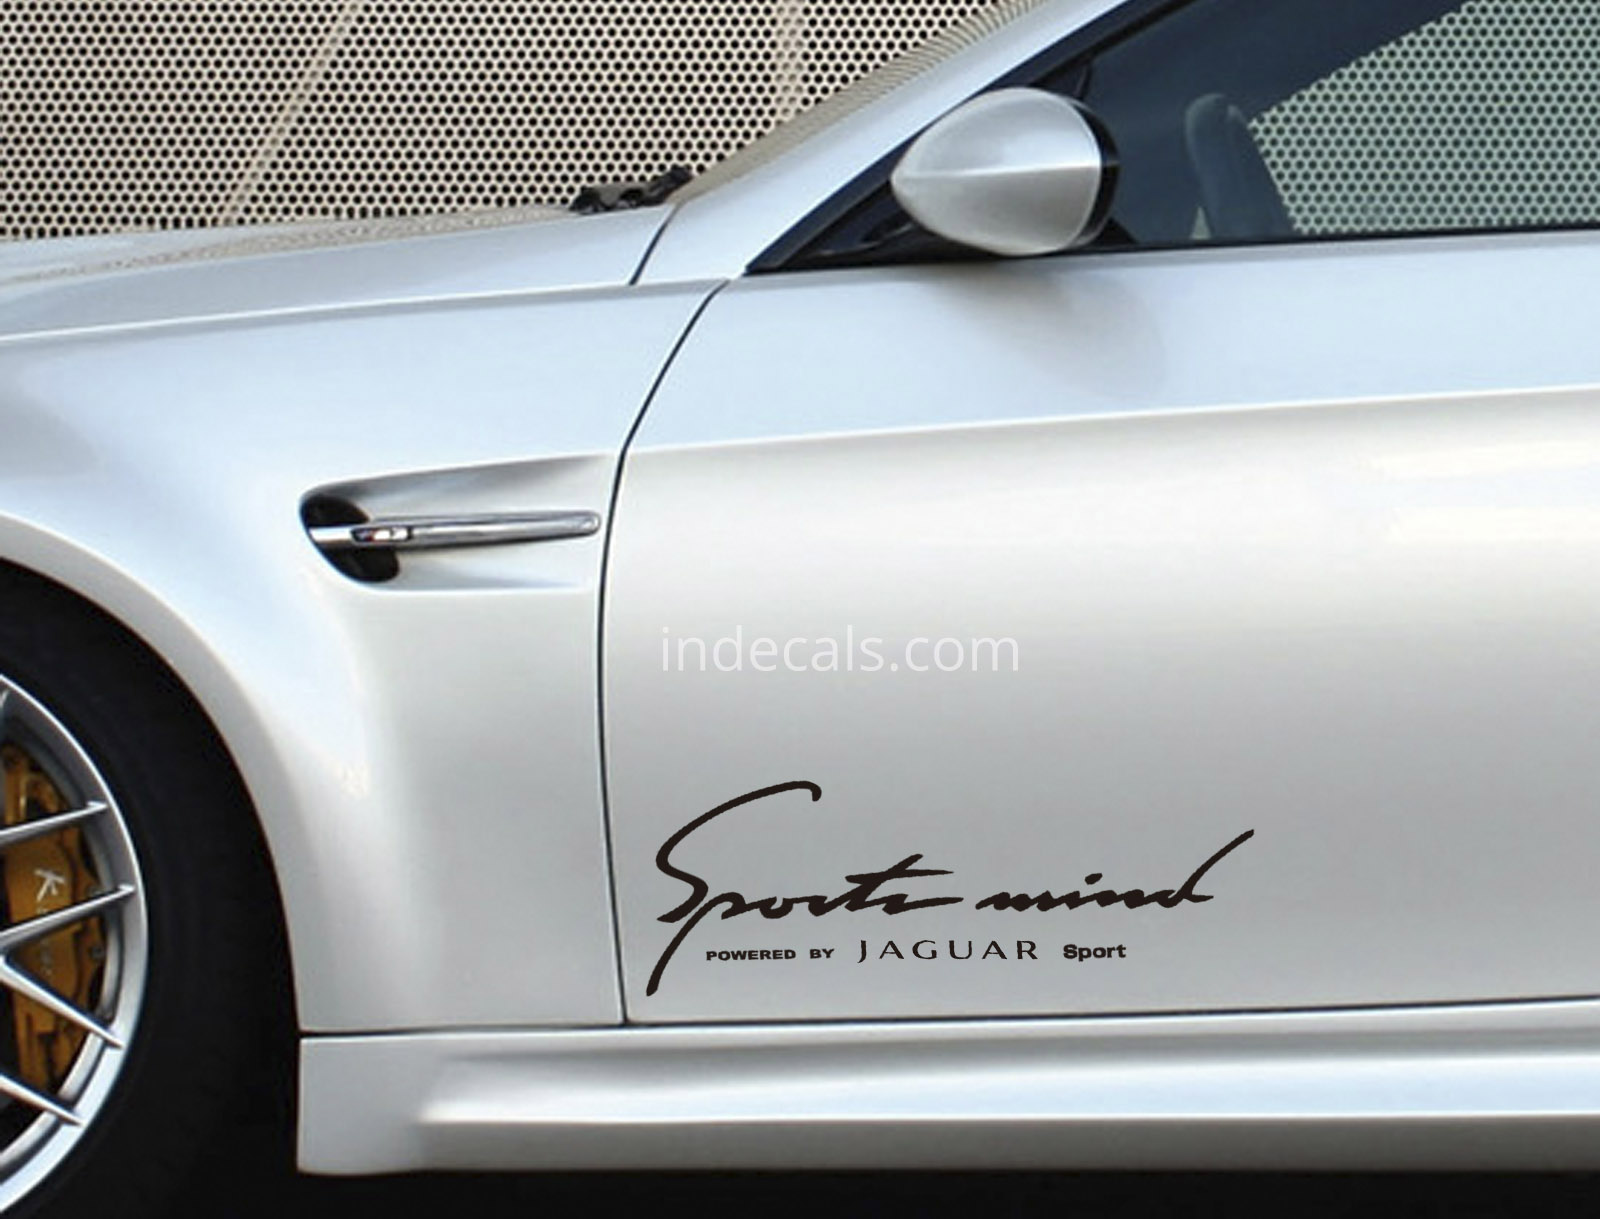 2 x Jaguar Sports Mind Stickers XL - Black